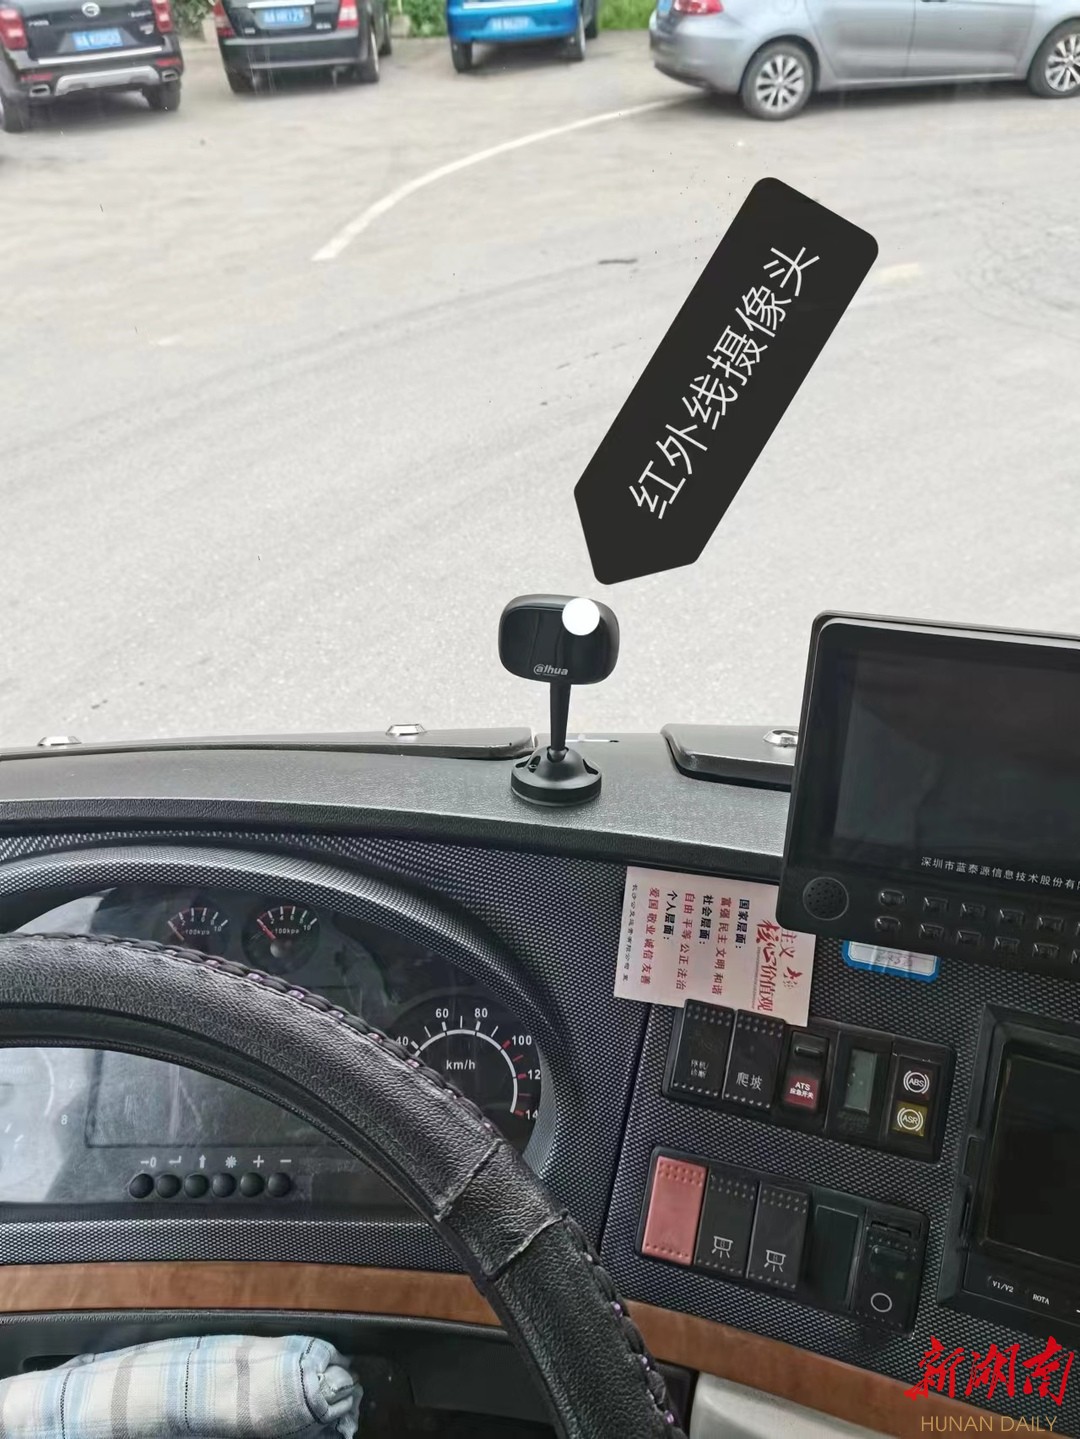 湖南日报丨有效预防疲劳驾驶等行为 长沙公交车安装驾驶安全辅助终端